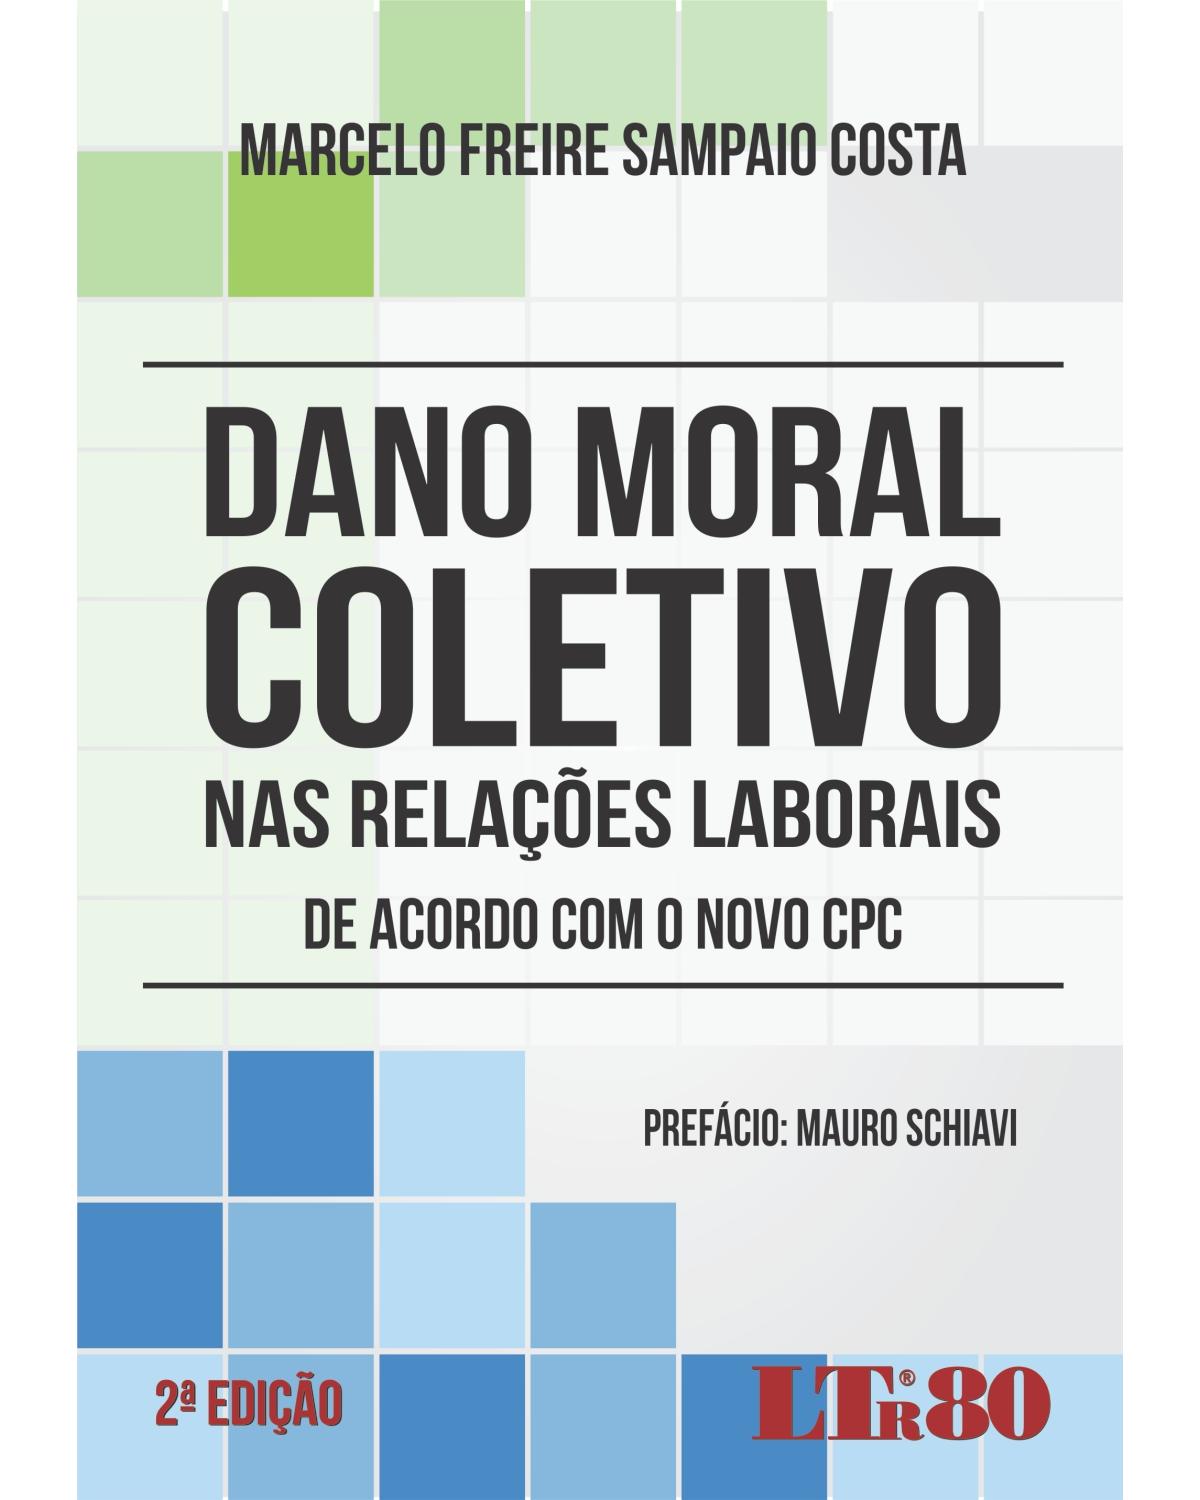 Dano moral coletivo nas relações laborais: De acordo com o novo CPC - 2ª Edição